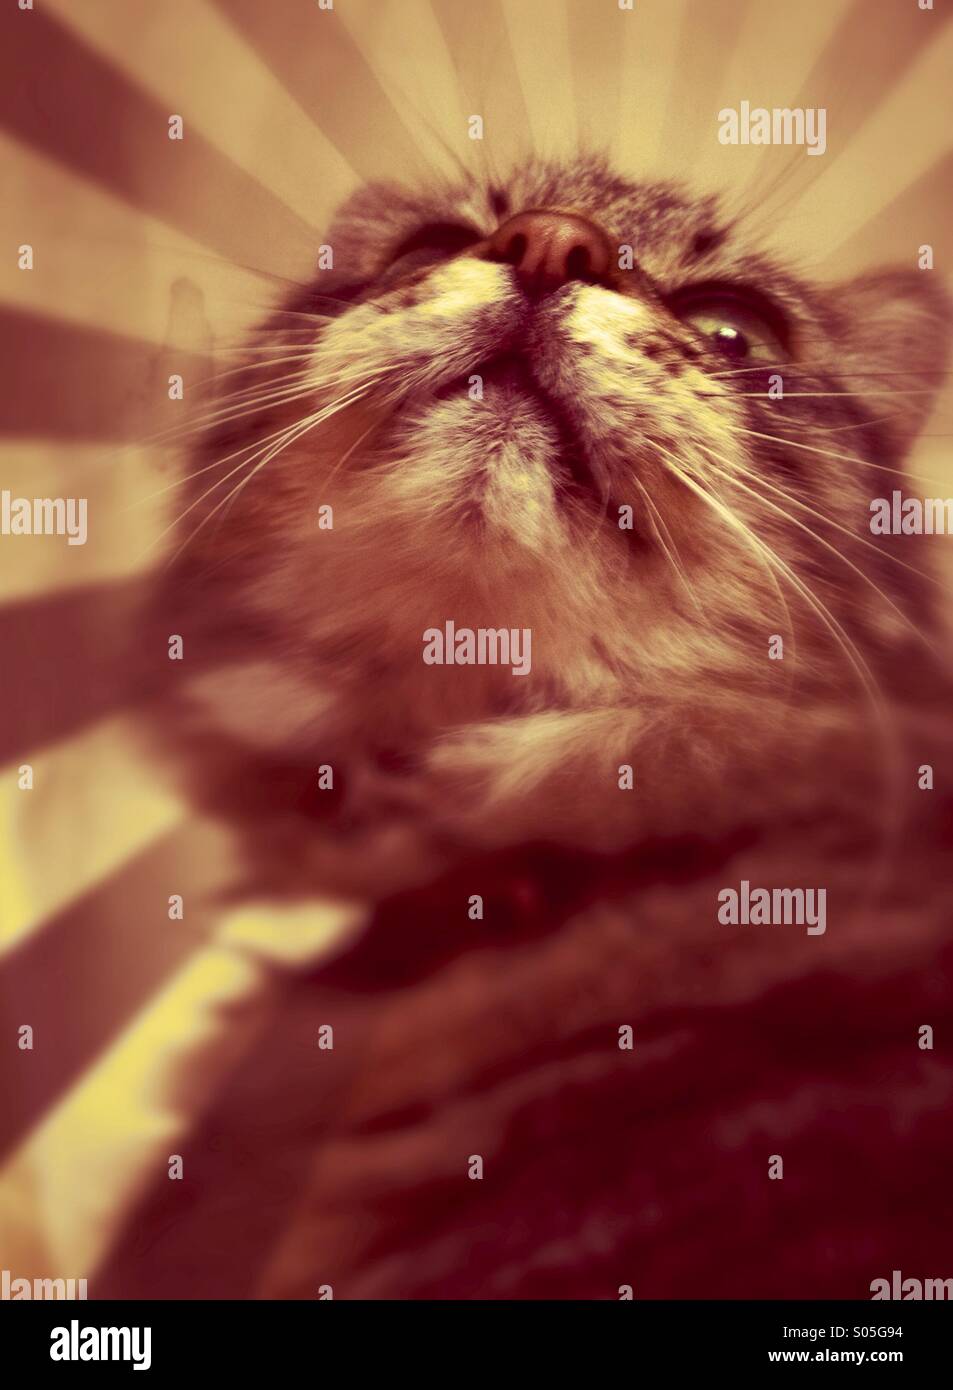 Ritratto di un gatto guardando verso l'alto Foto Stock